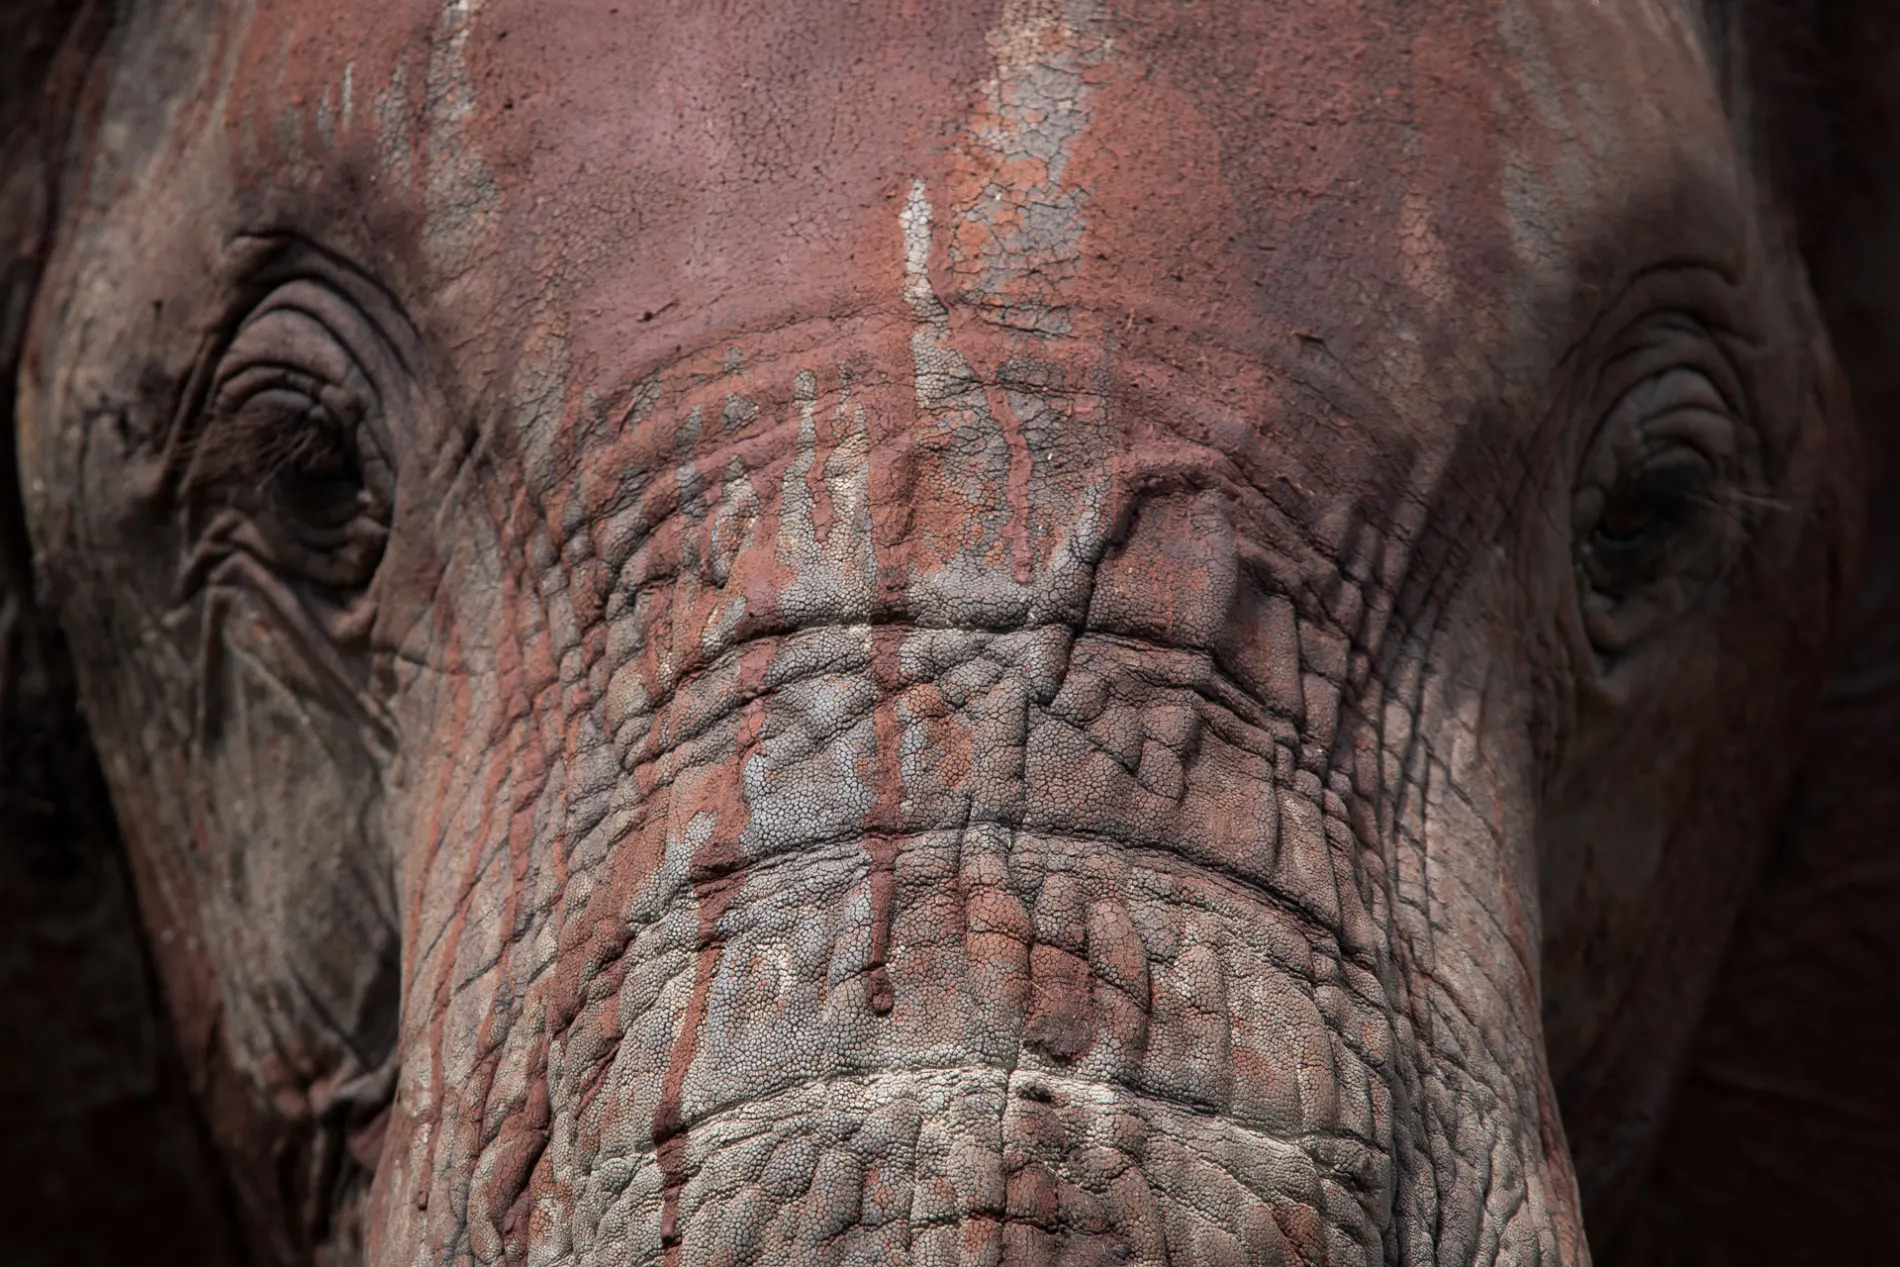 Elephant Face